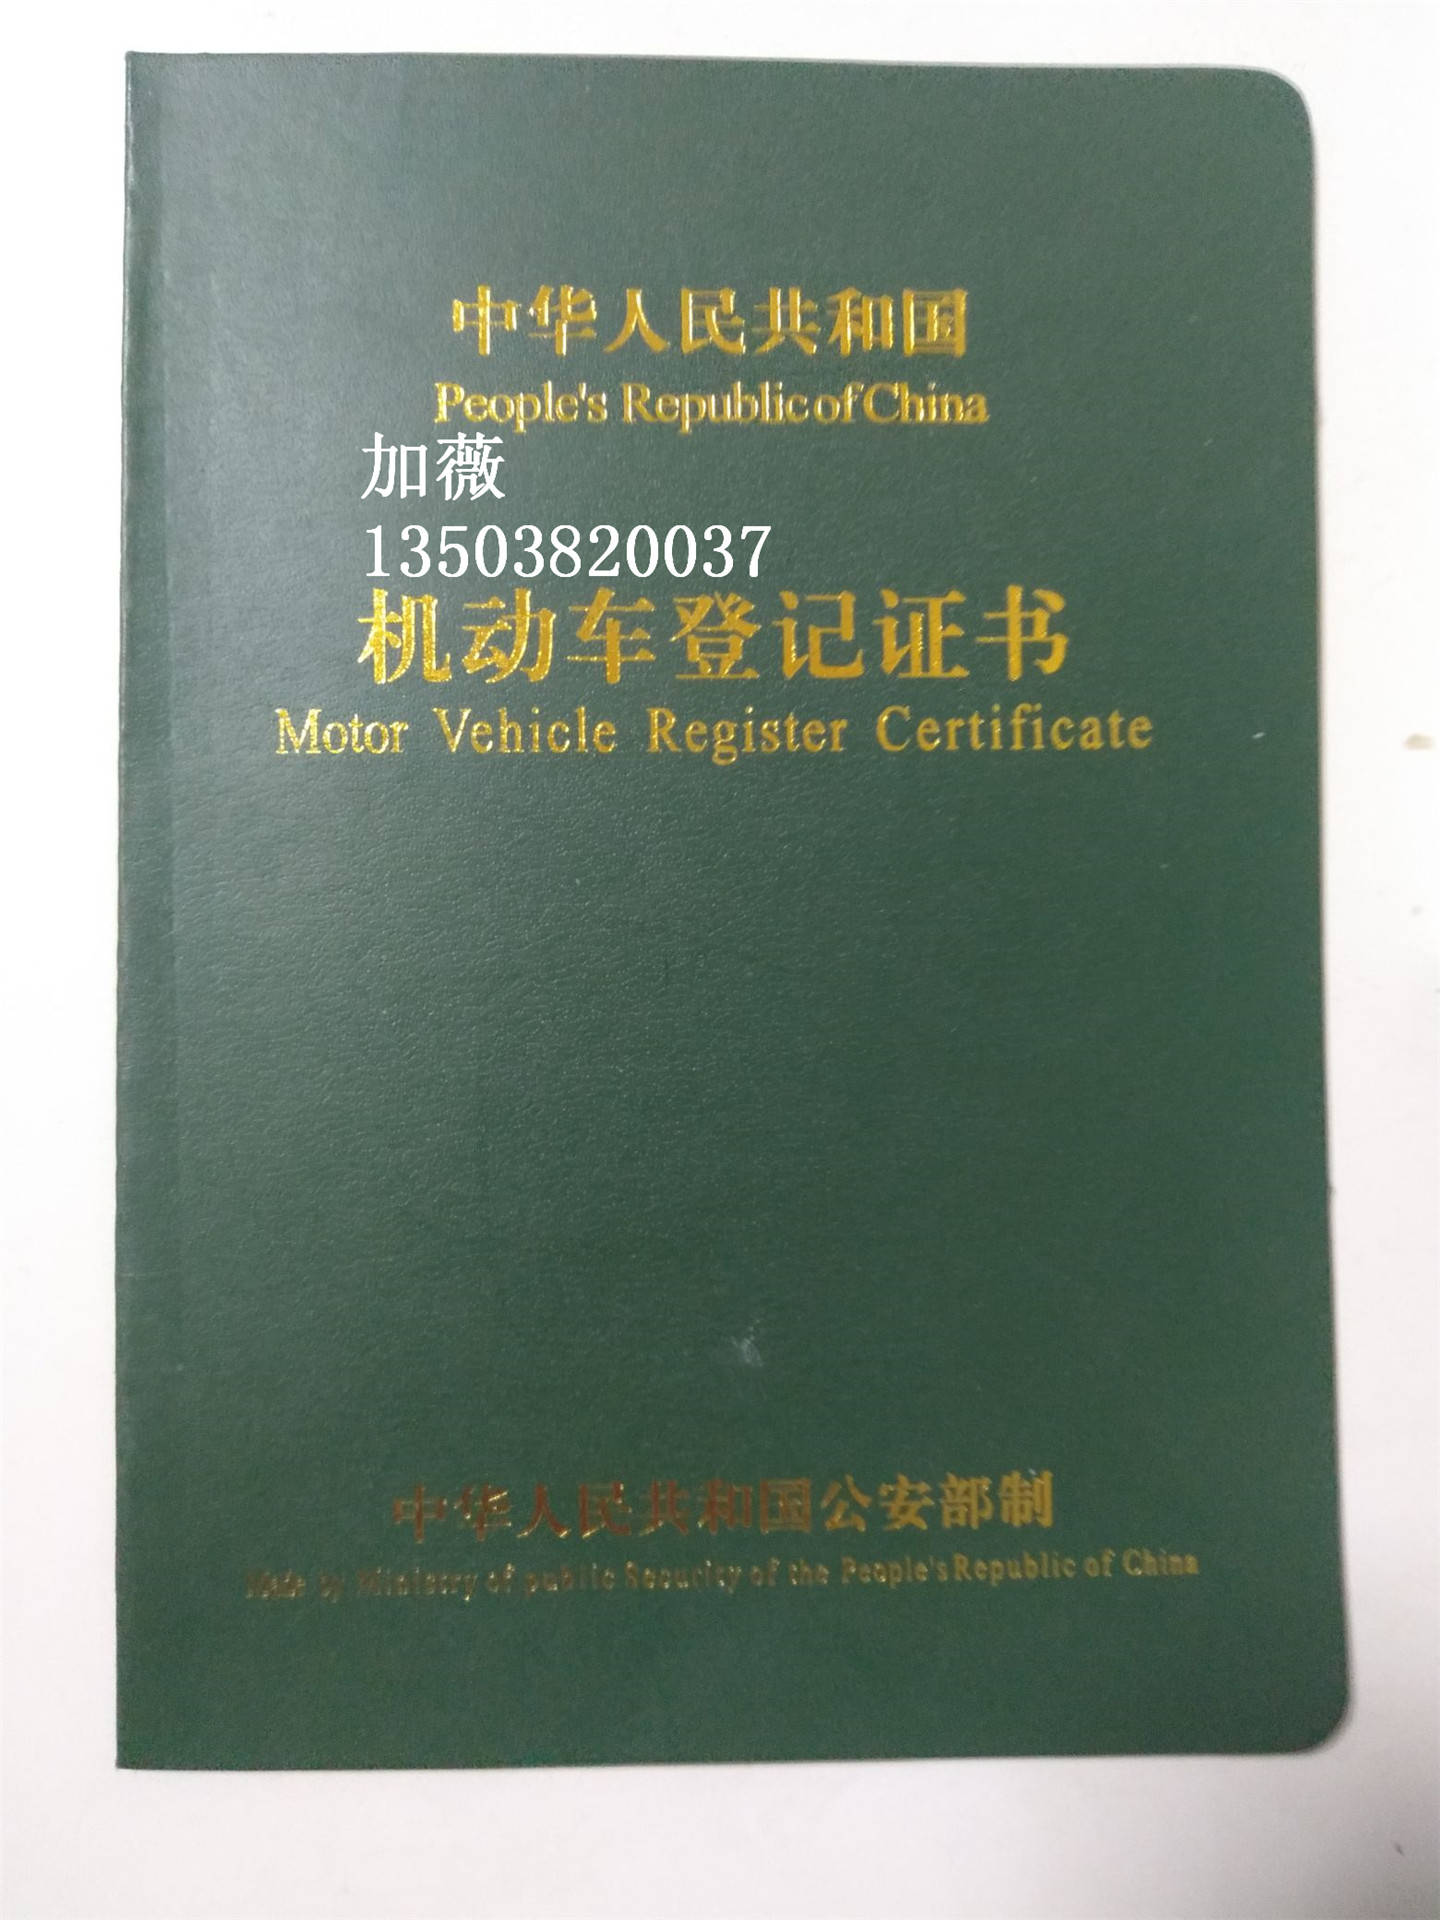 机动车绿本 机动车车辆登记证 机动车登记证图片样本 机动车登记证